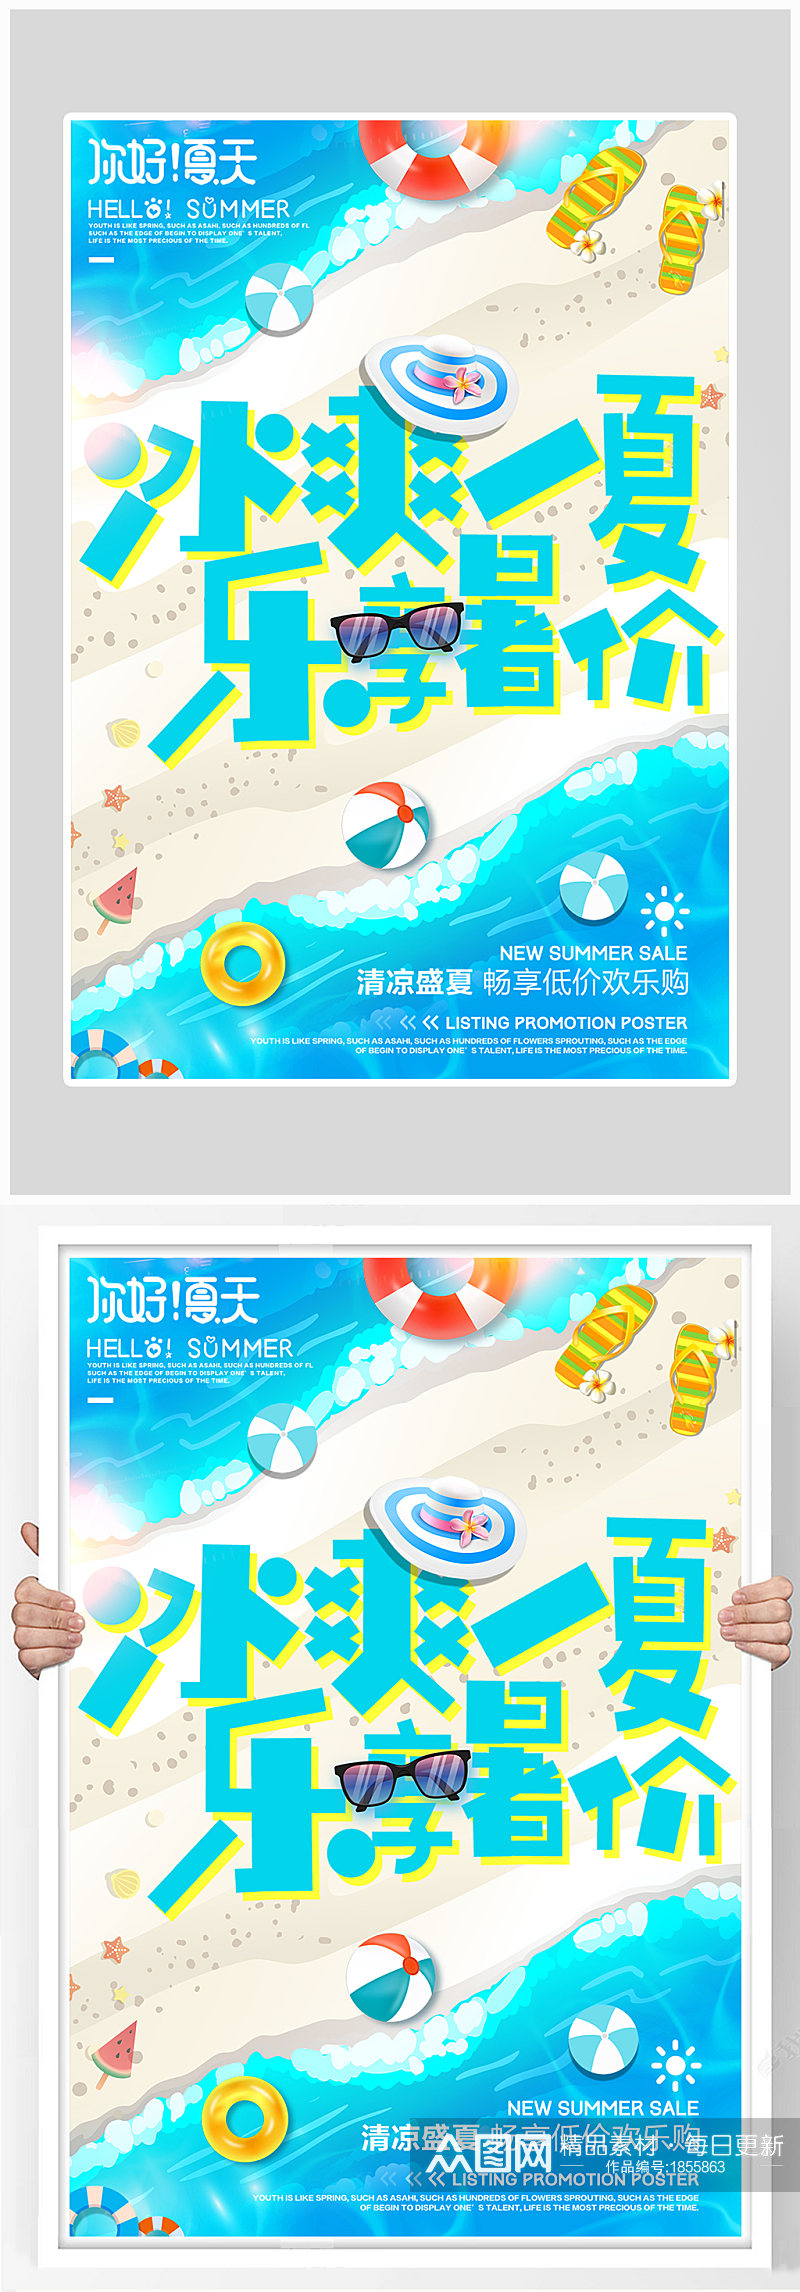 创意海滩沙滩冰爽一夏大促海报设计素材